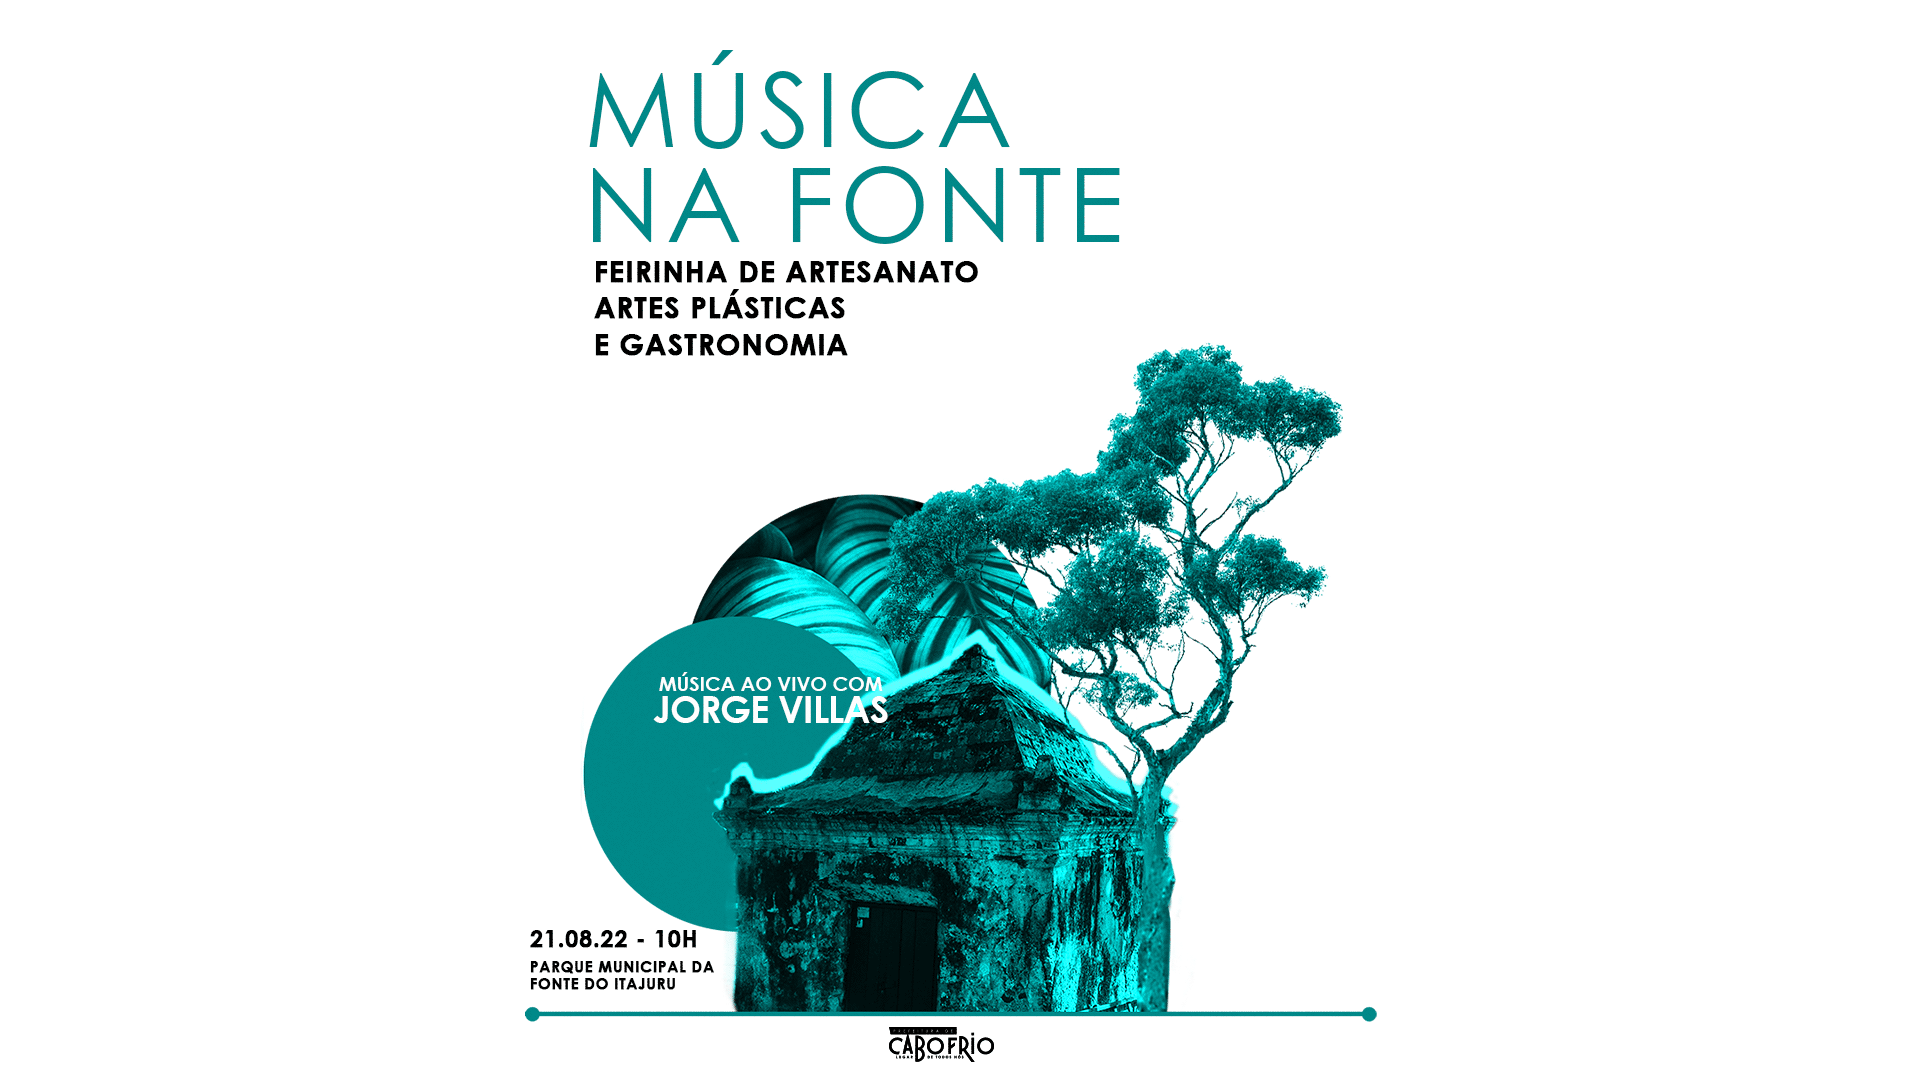 Música na Fonte tem apresentação do cantor Jorge Villas neste domingo (21), em Cabo Frio